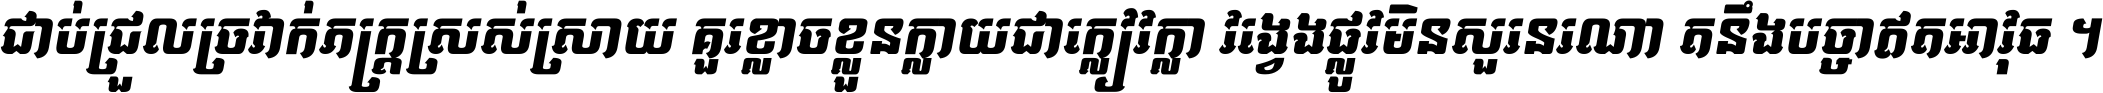 Kh Baphnom 042 Vatey Italic